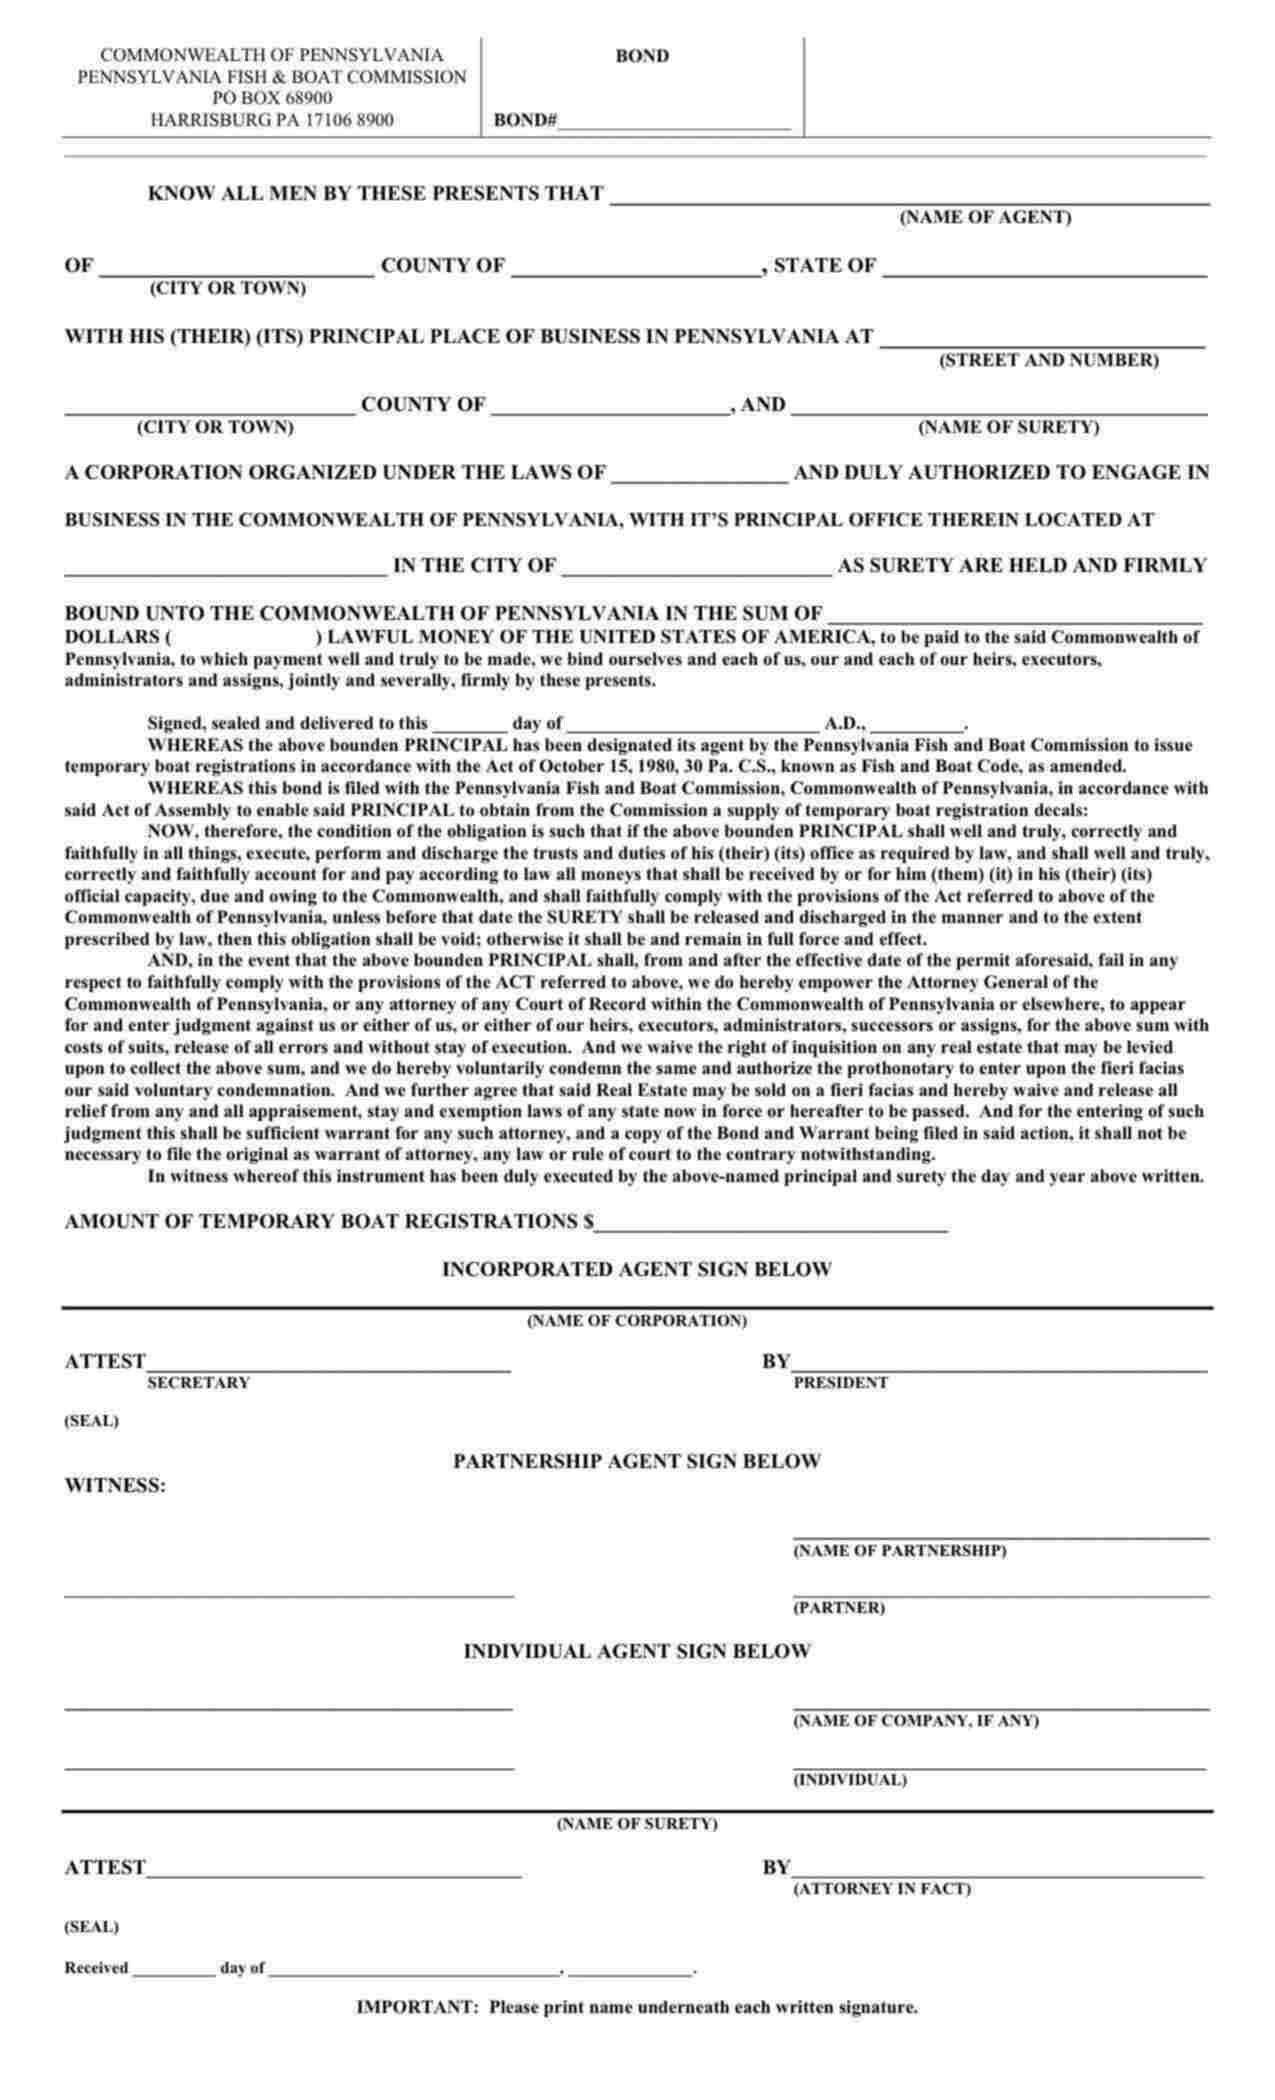 Pennsylvania Temporary Boat Registration Agent Bond Form